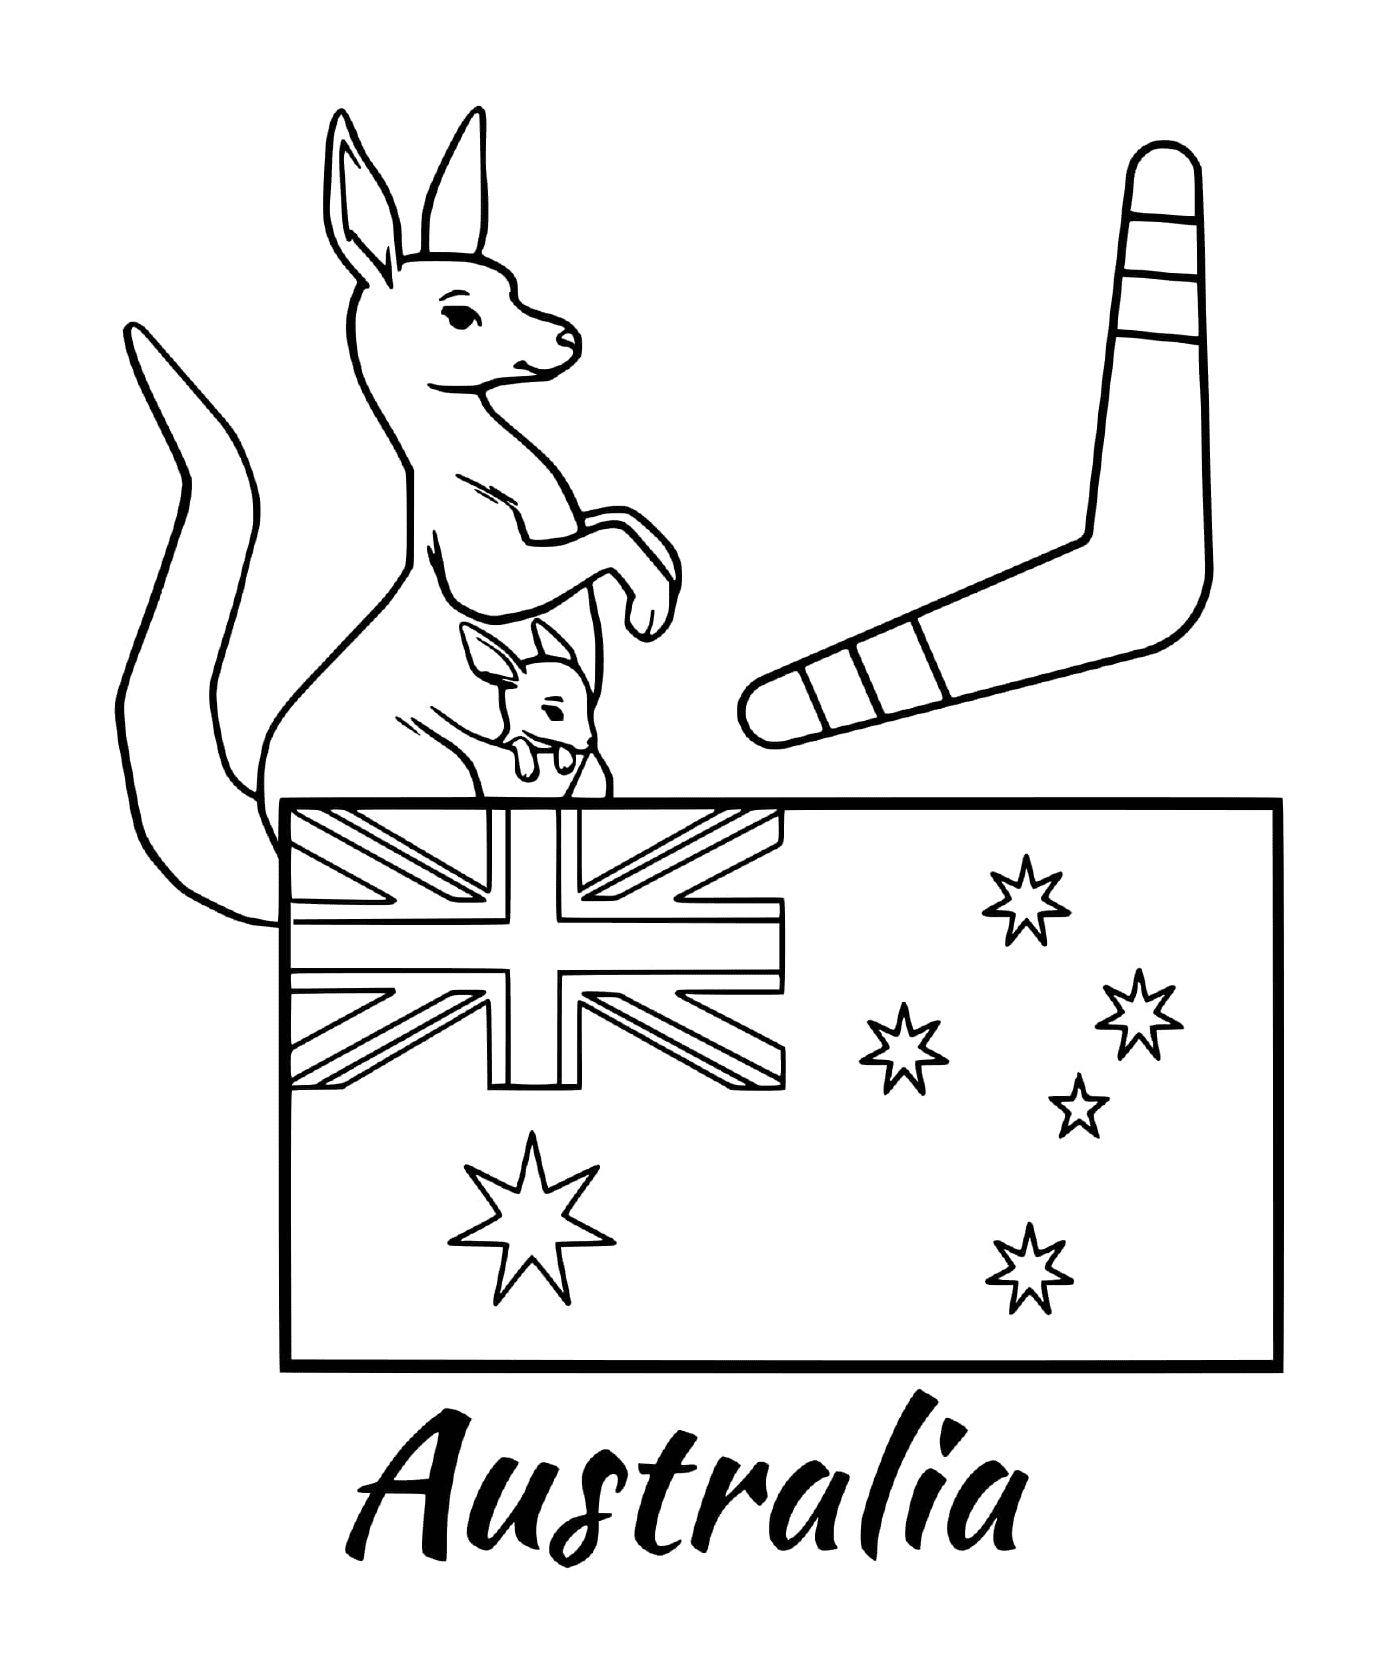  बूरडांग के साथ ऑस्ट्रेलिया का फ्लैग 